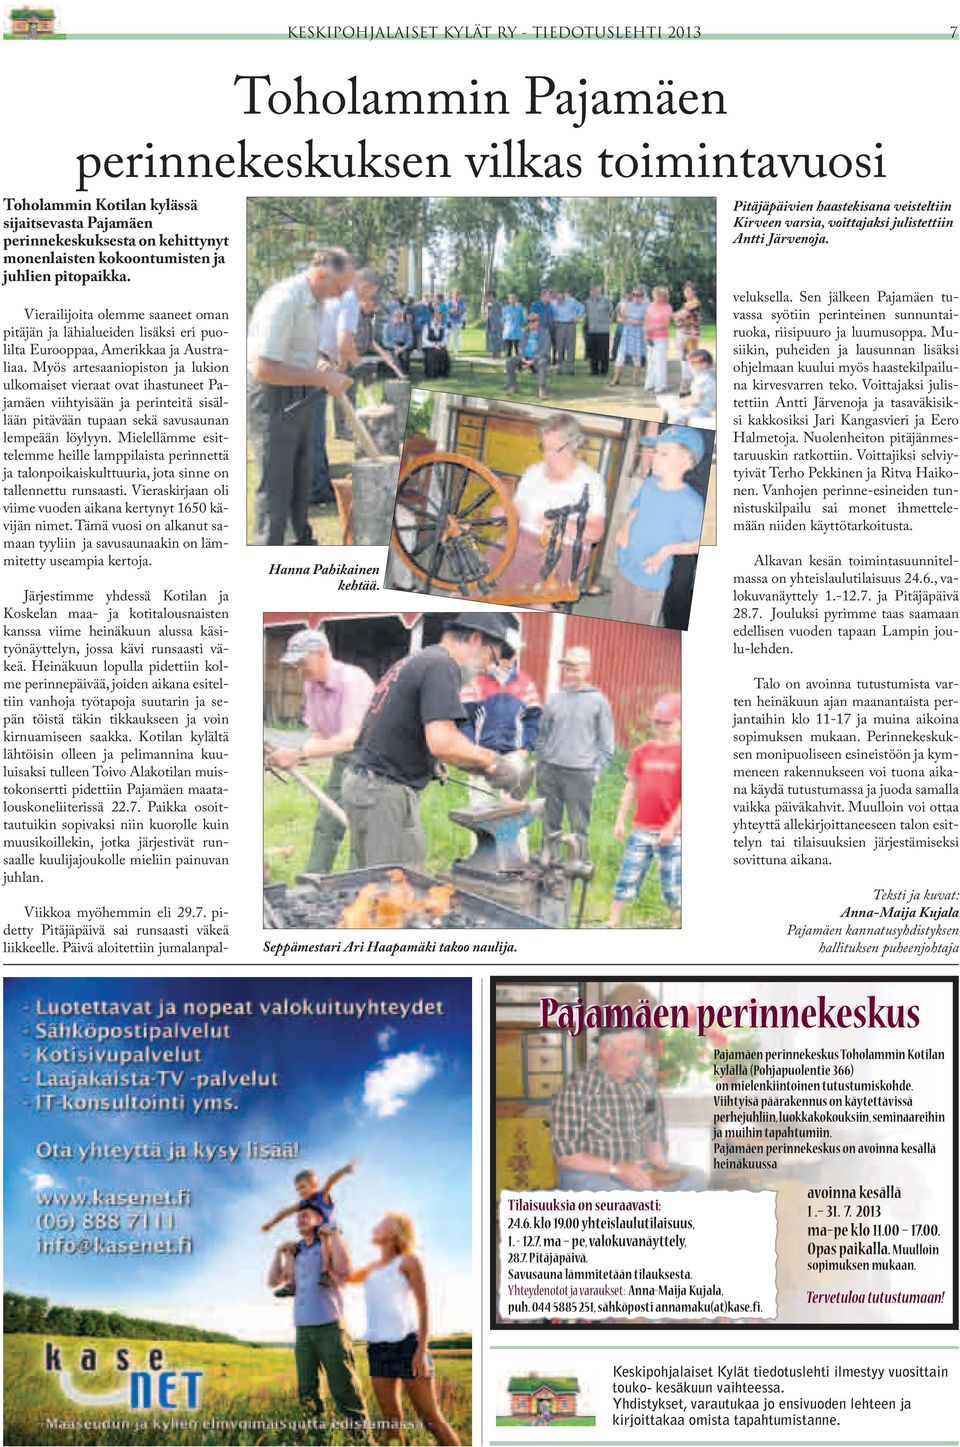 Myös artesaaniopiston ja lukion ulkomaiset vieraat ovat ihastuneet Pajamäen viihtyisään ja perinteitä sisällään pitävään tupaan sekä savusaunan lempeään löylyyn.